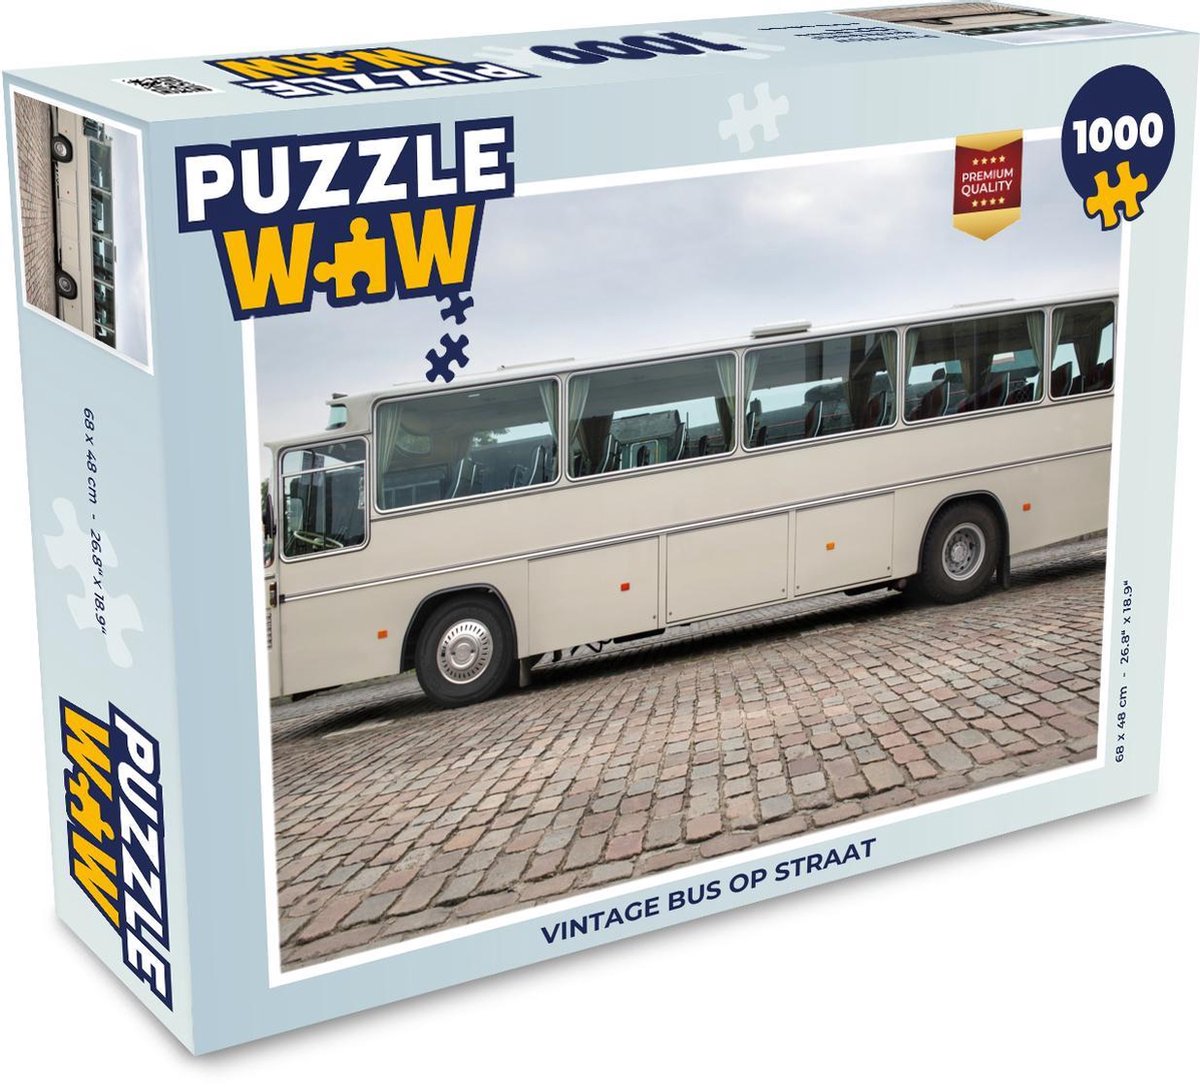 Afbeelding van product Puzzel 1000 stukjes volwassenen Vintage bus 1000 stukjes - Vintage bus op straat - PuzzleWow heeft +100000 puzzels